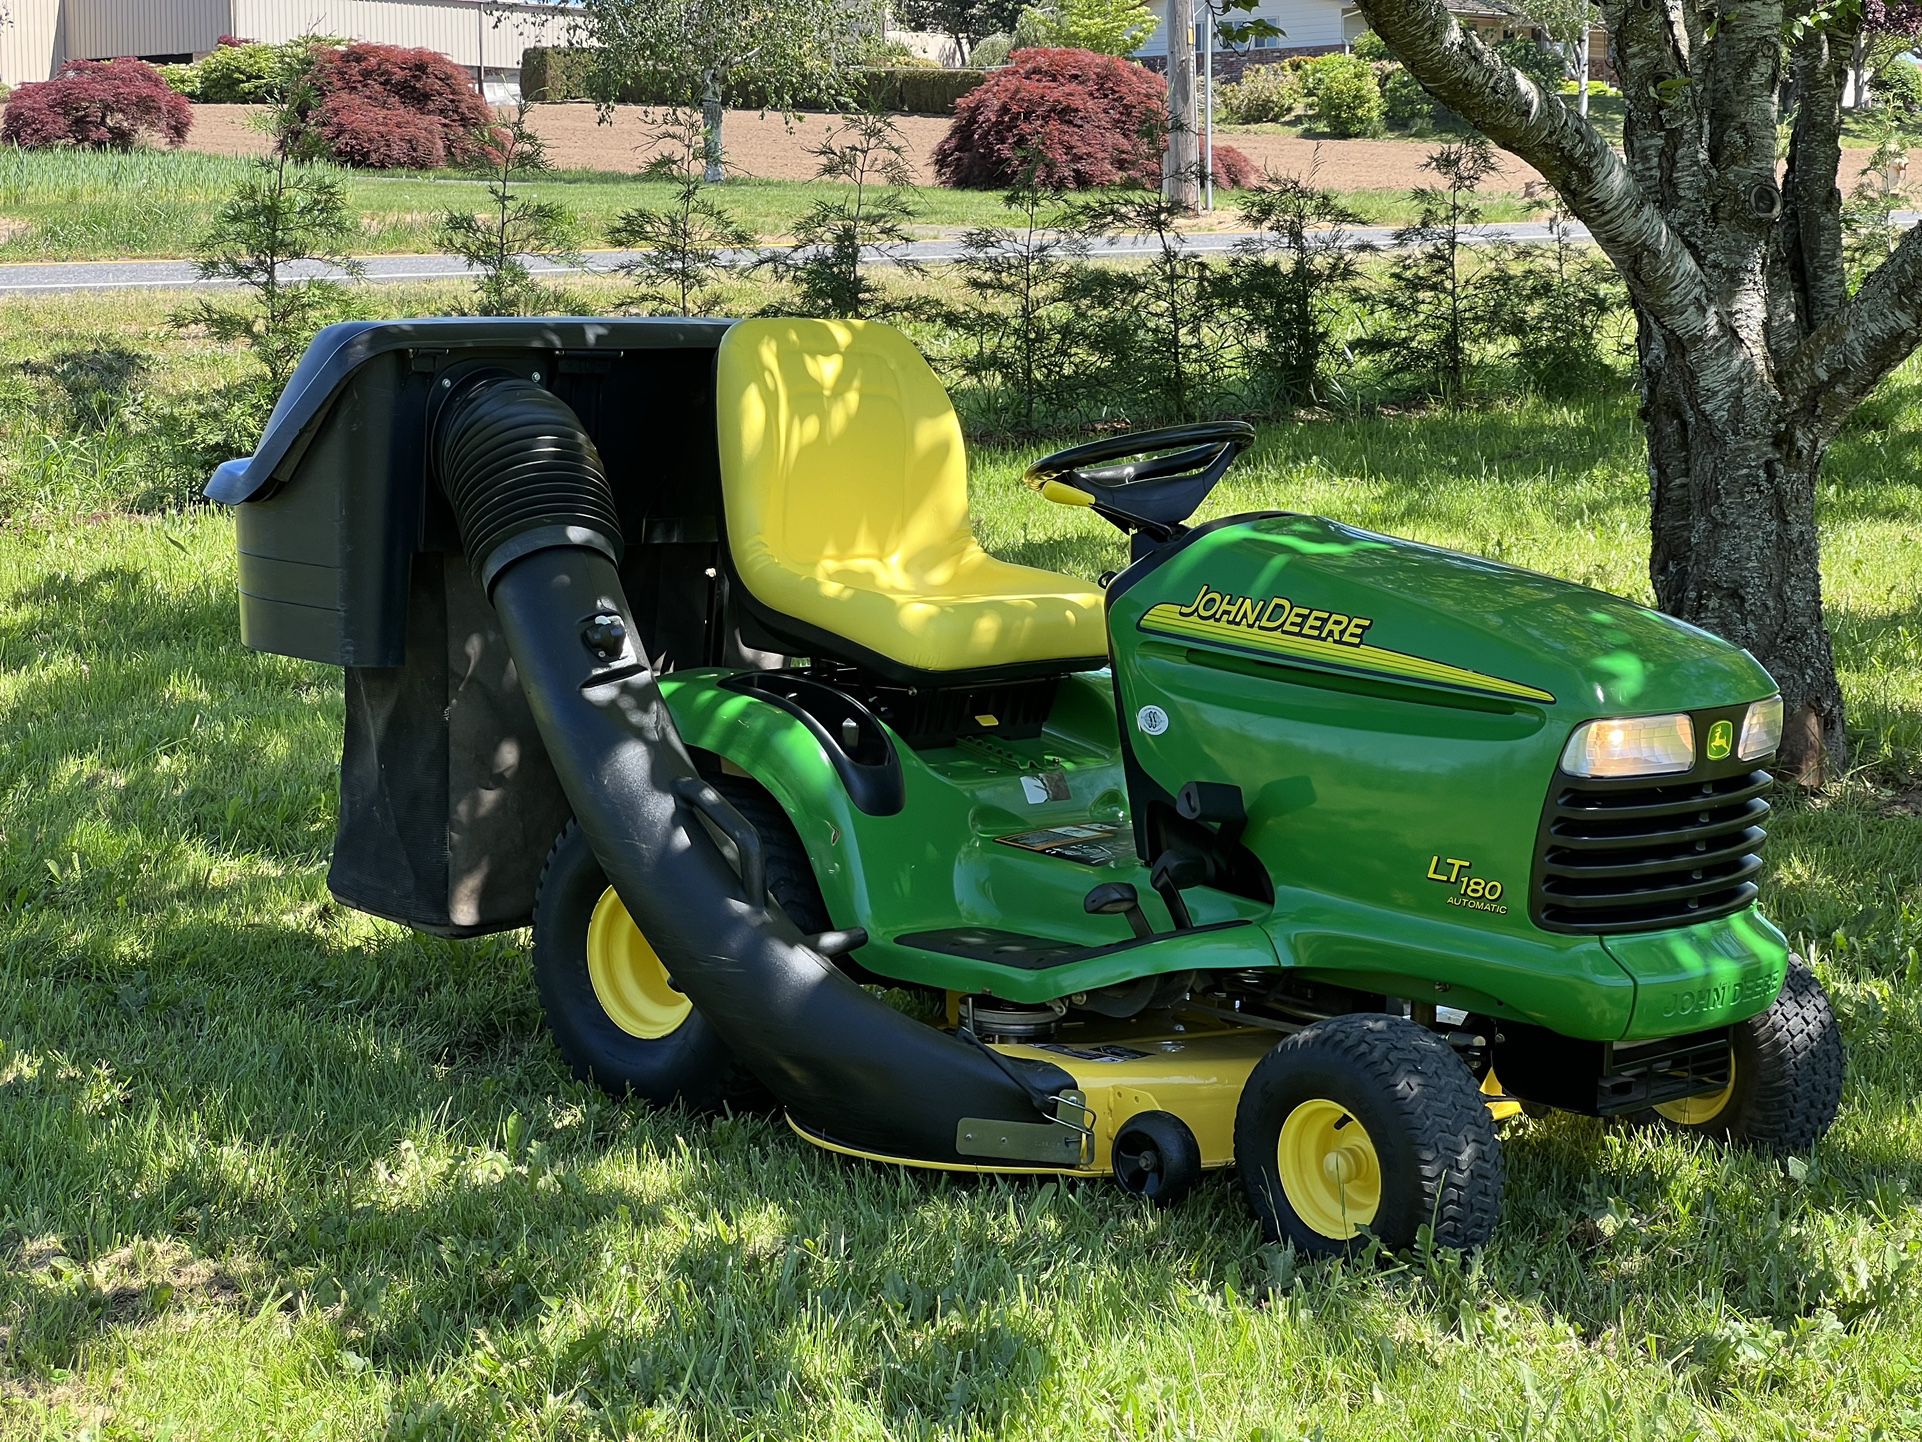 John Deere LT180 Riding Lawn Mower Tractor 42” Cut 17Hp Kawasaki Bagger